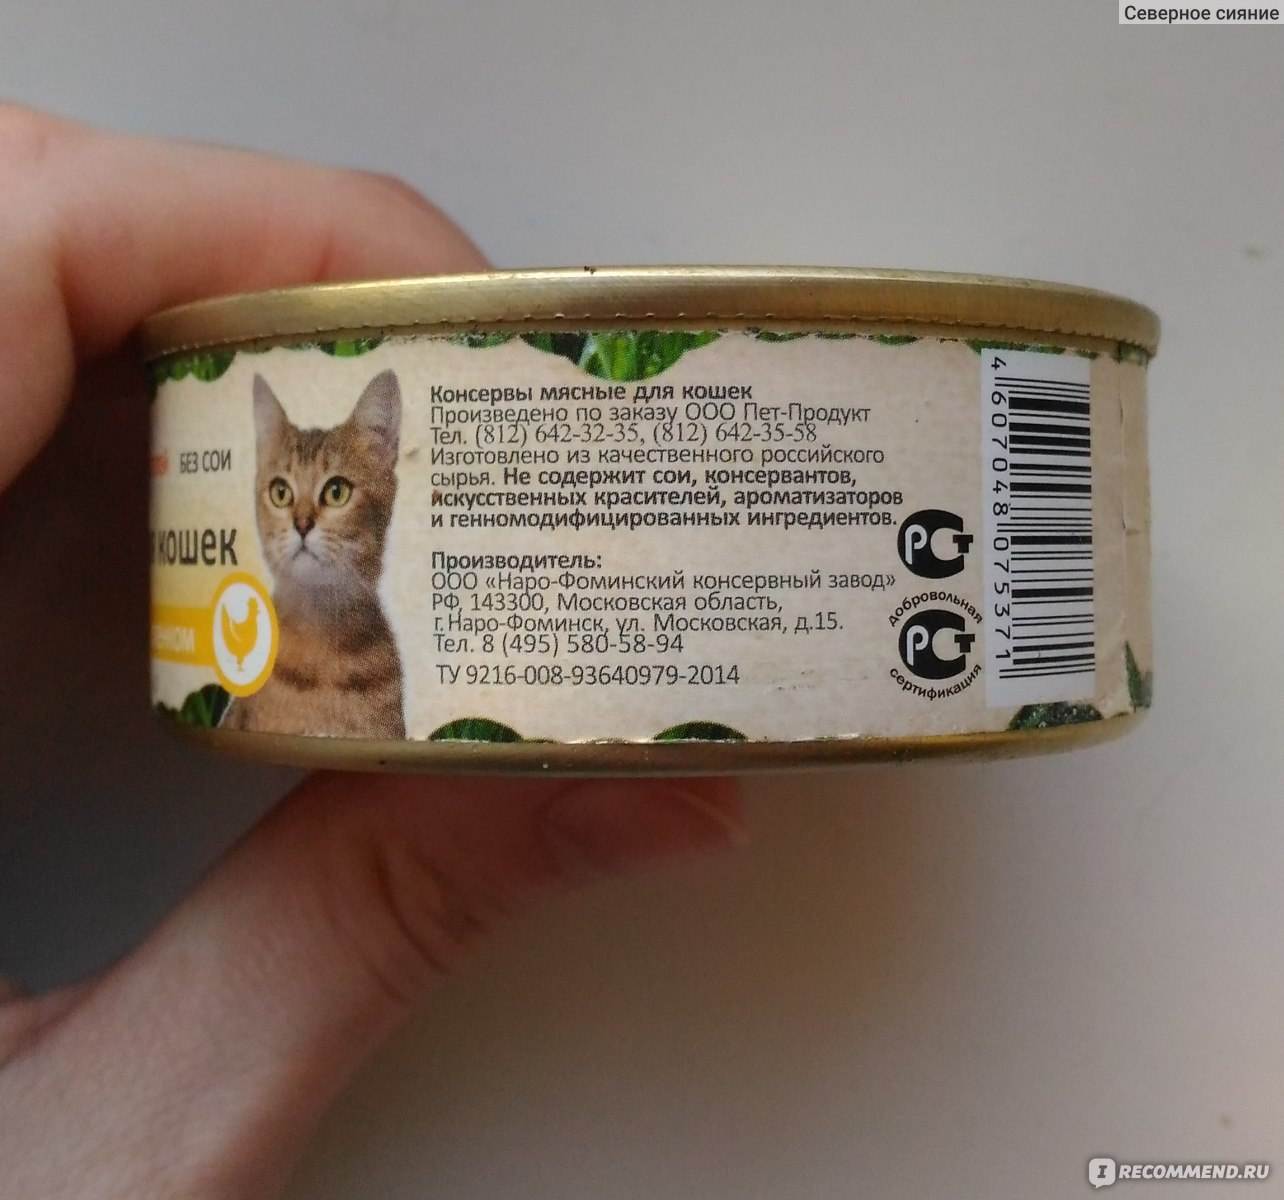 ᐉ обзор корма для кошек organix - ➡ motildazoo.ru